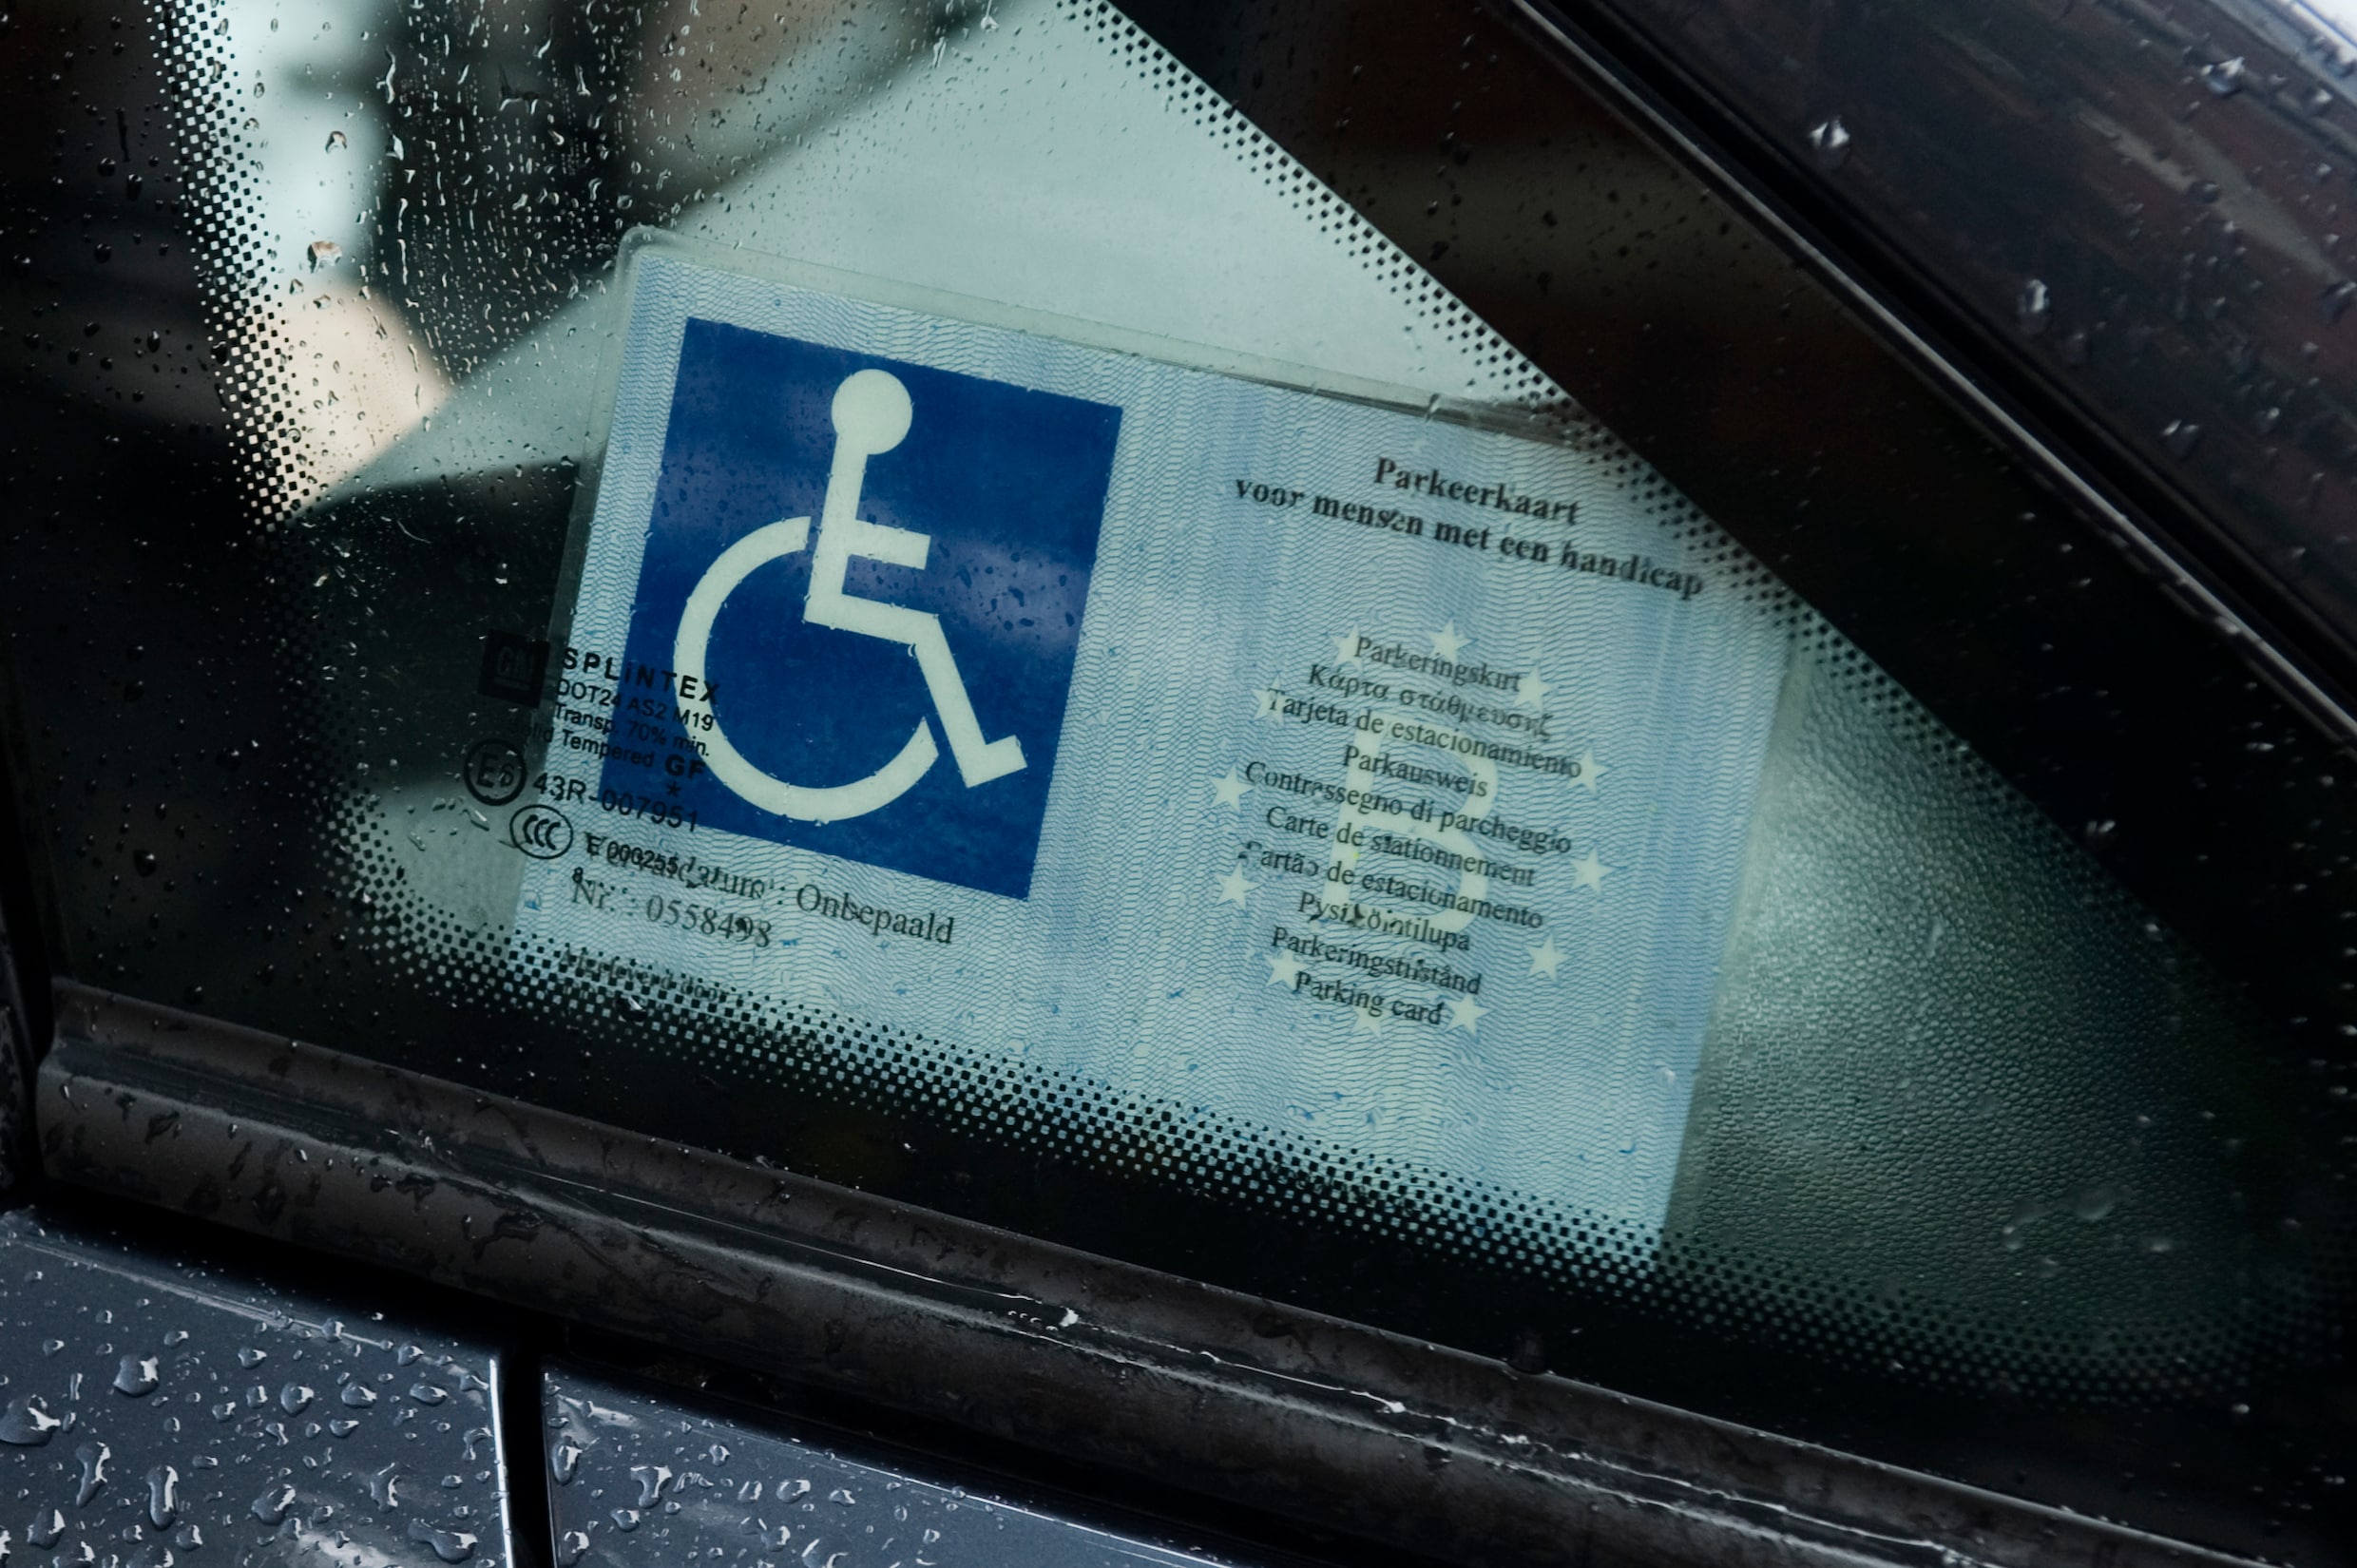 Dienst voor personen met een handicap blijkt zowat onbereikbaar. Is er beterschap op komst?